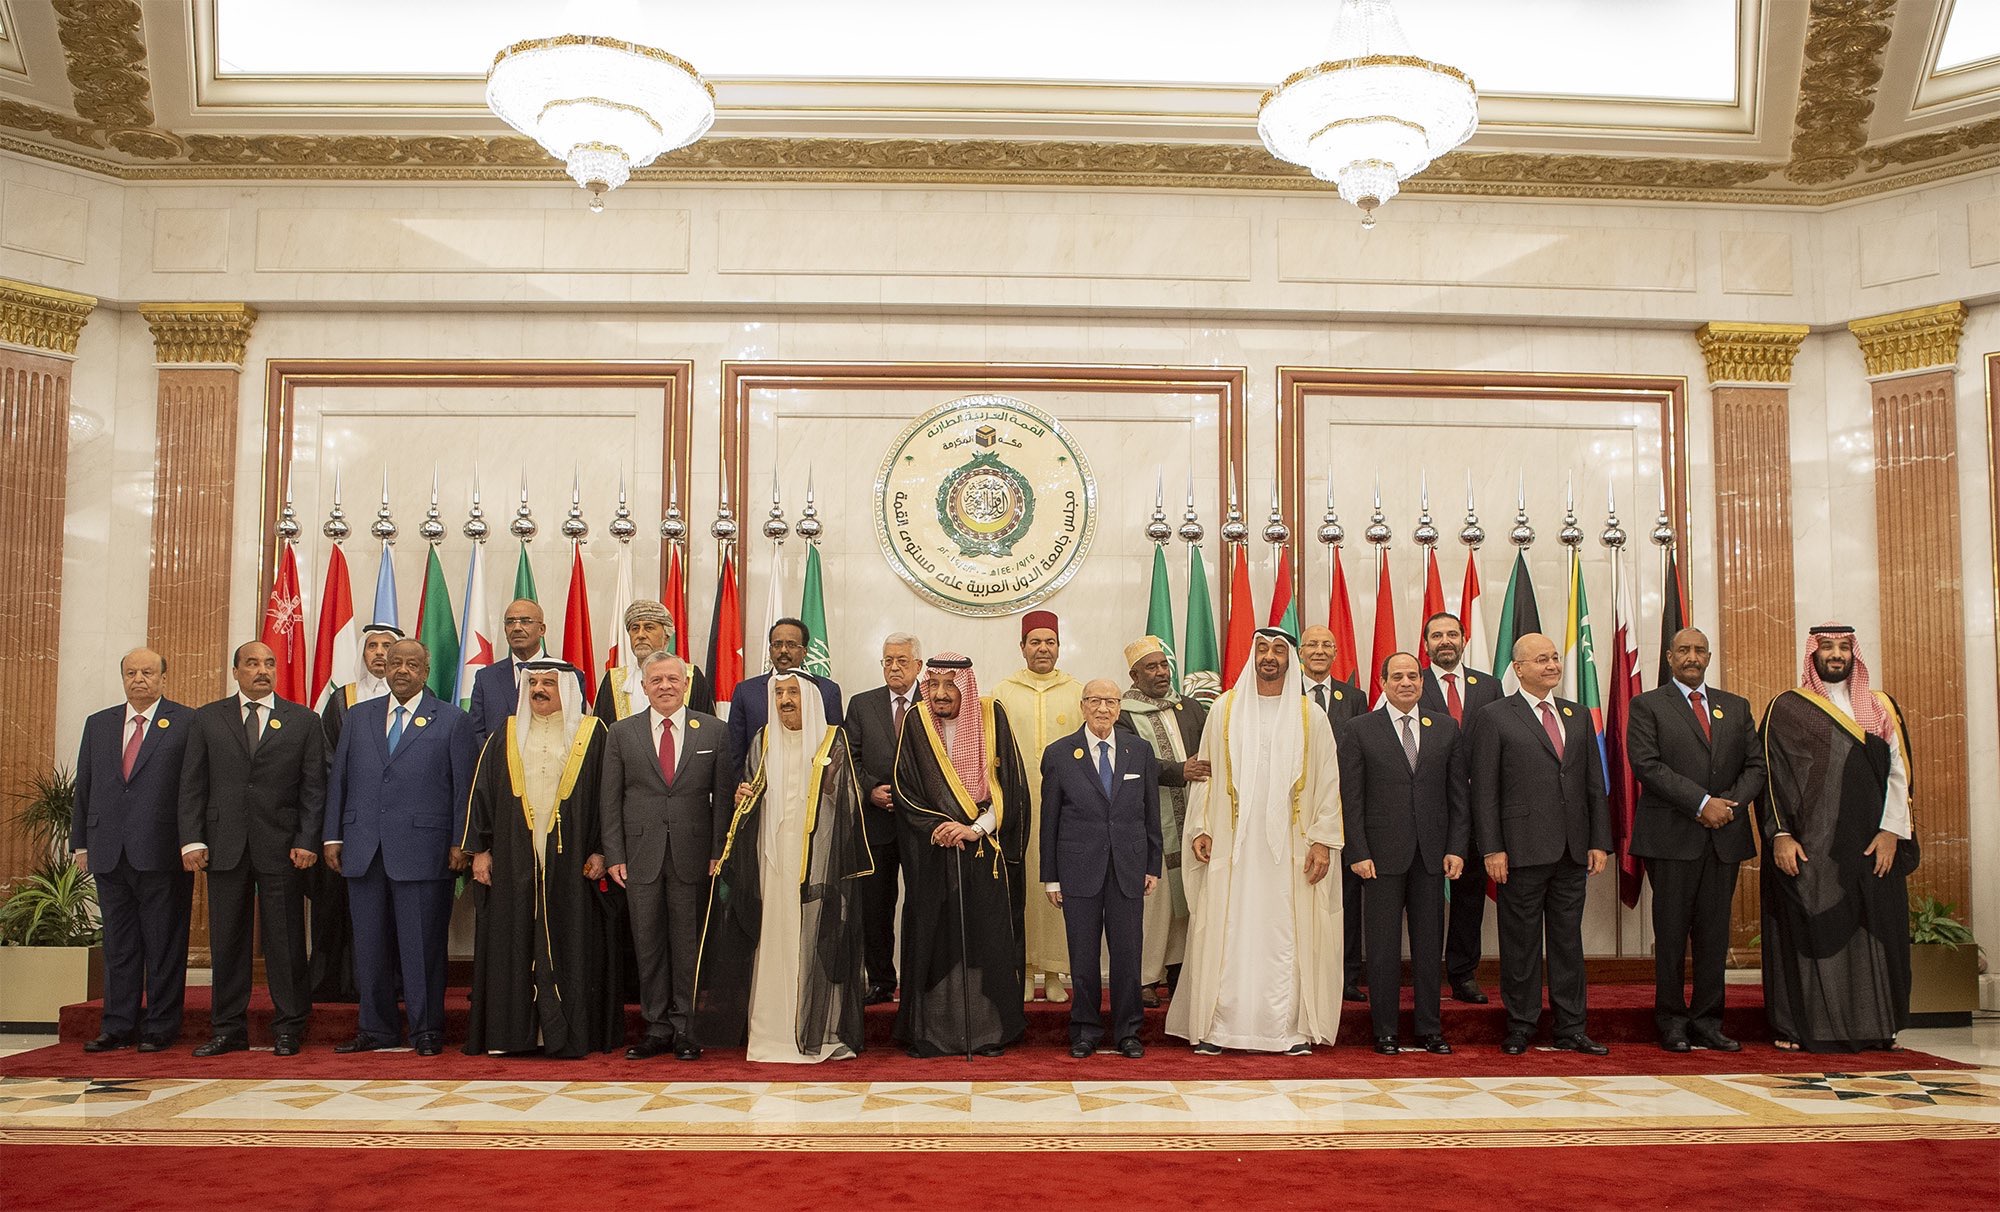 القمة العربية الطارئة بمكة تدين 